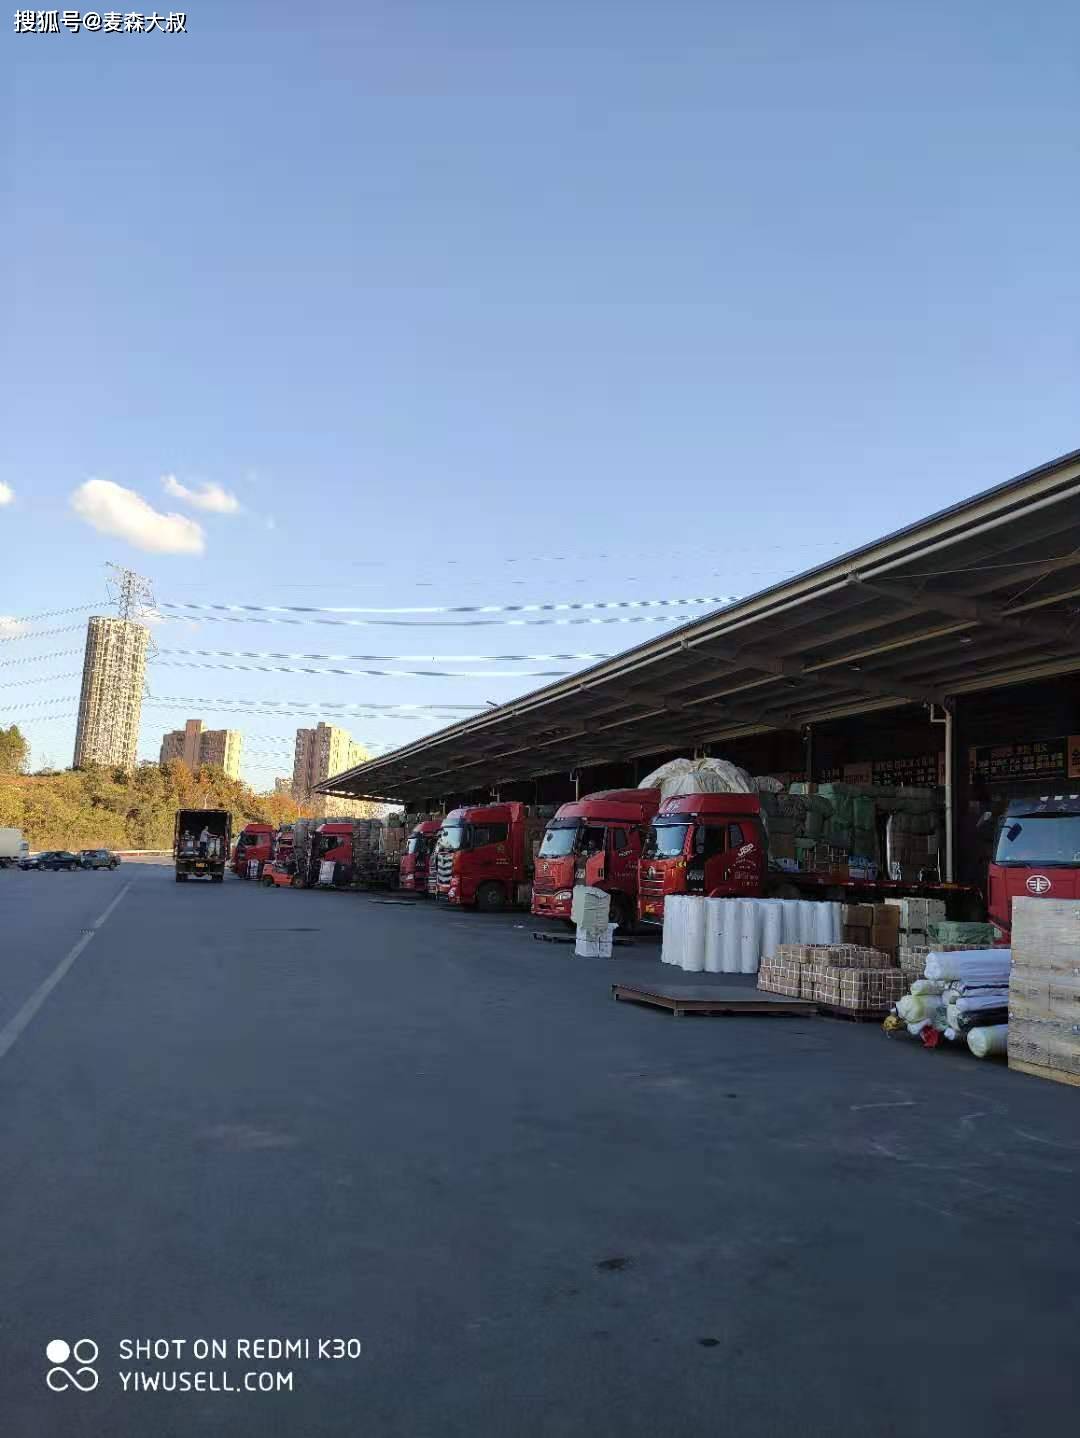 义乌青口物流中心南侧北侧已是义乌物流托运部集中的发货市场